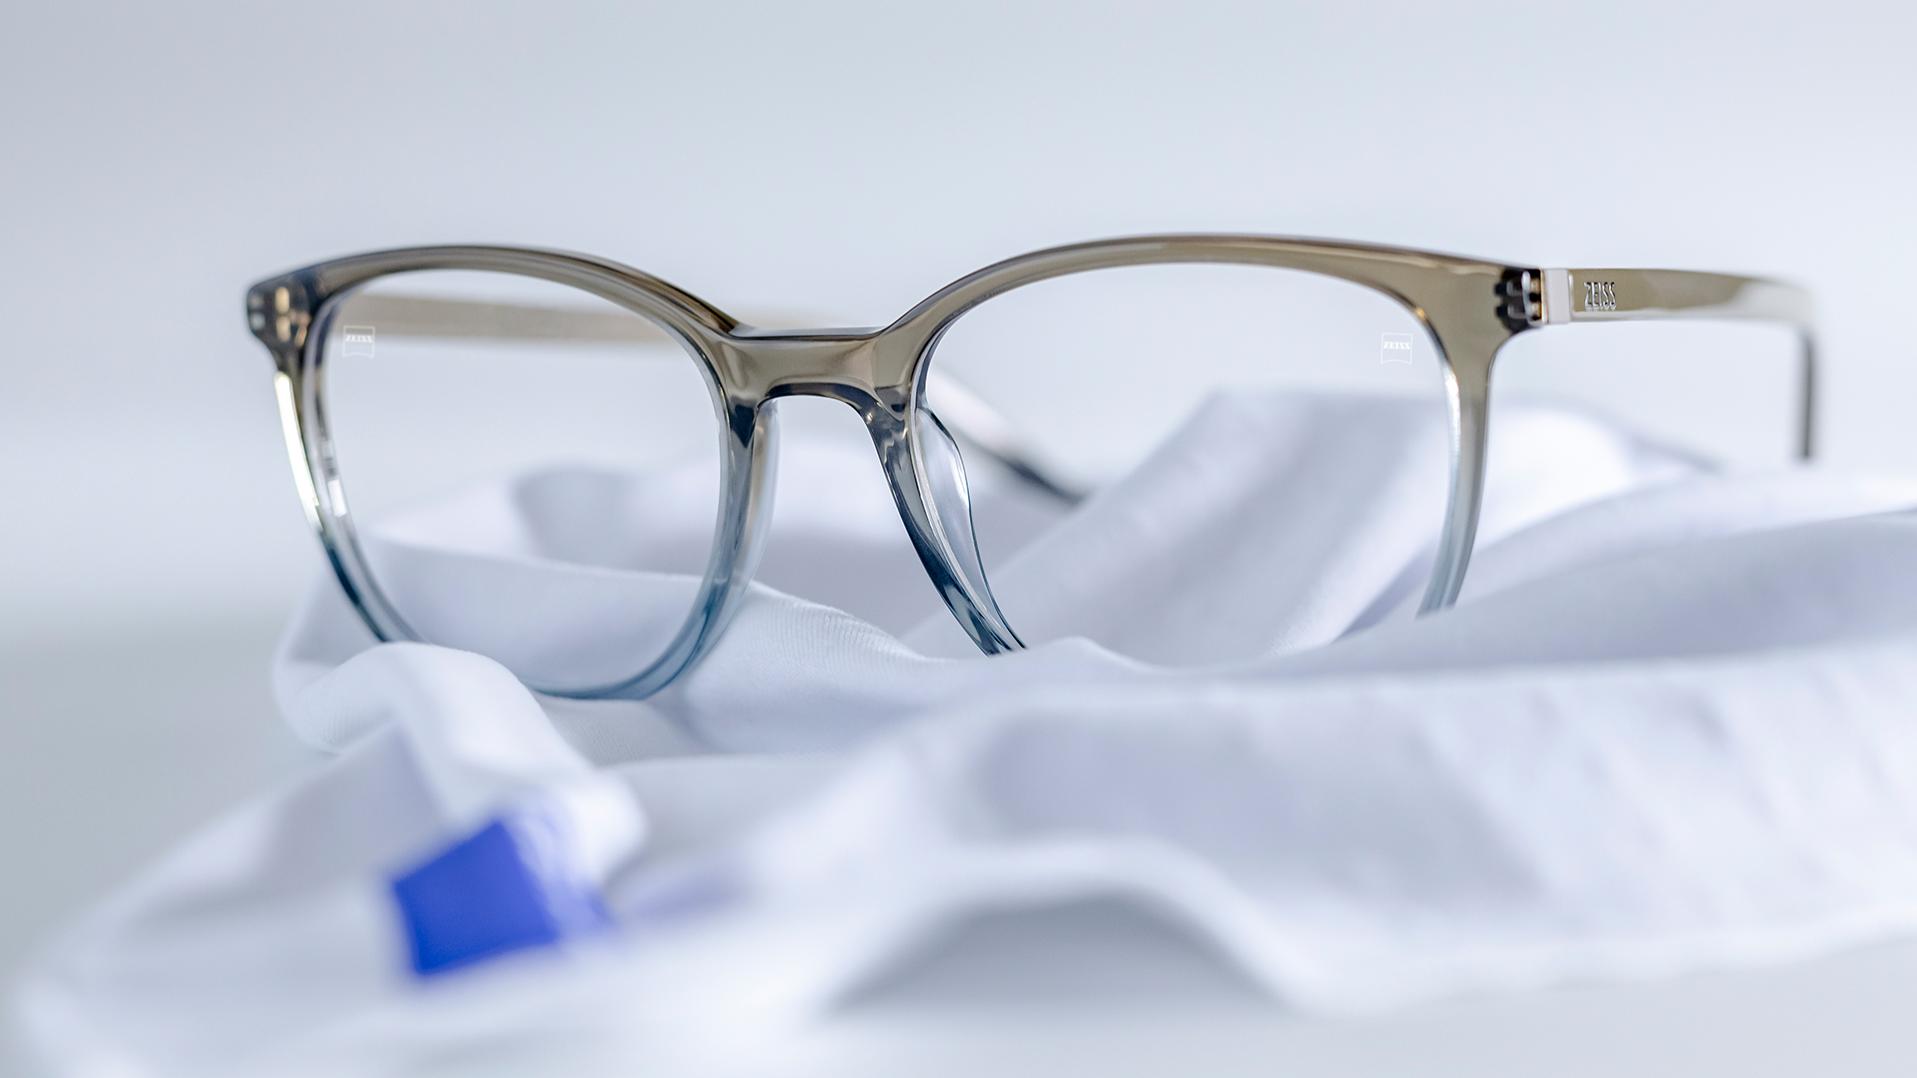 ブルーグレーのフレームとZEISS DuraVision®コーティングレンズのメガネが白いマイクロファイバークロスの上に置かれている。